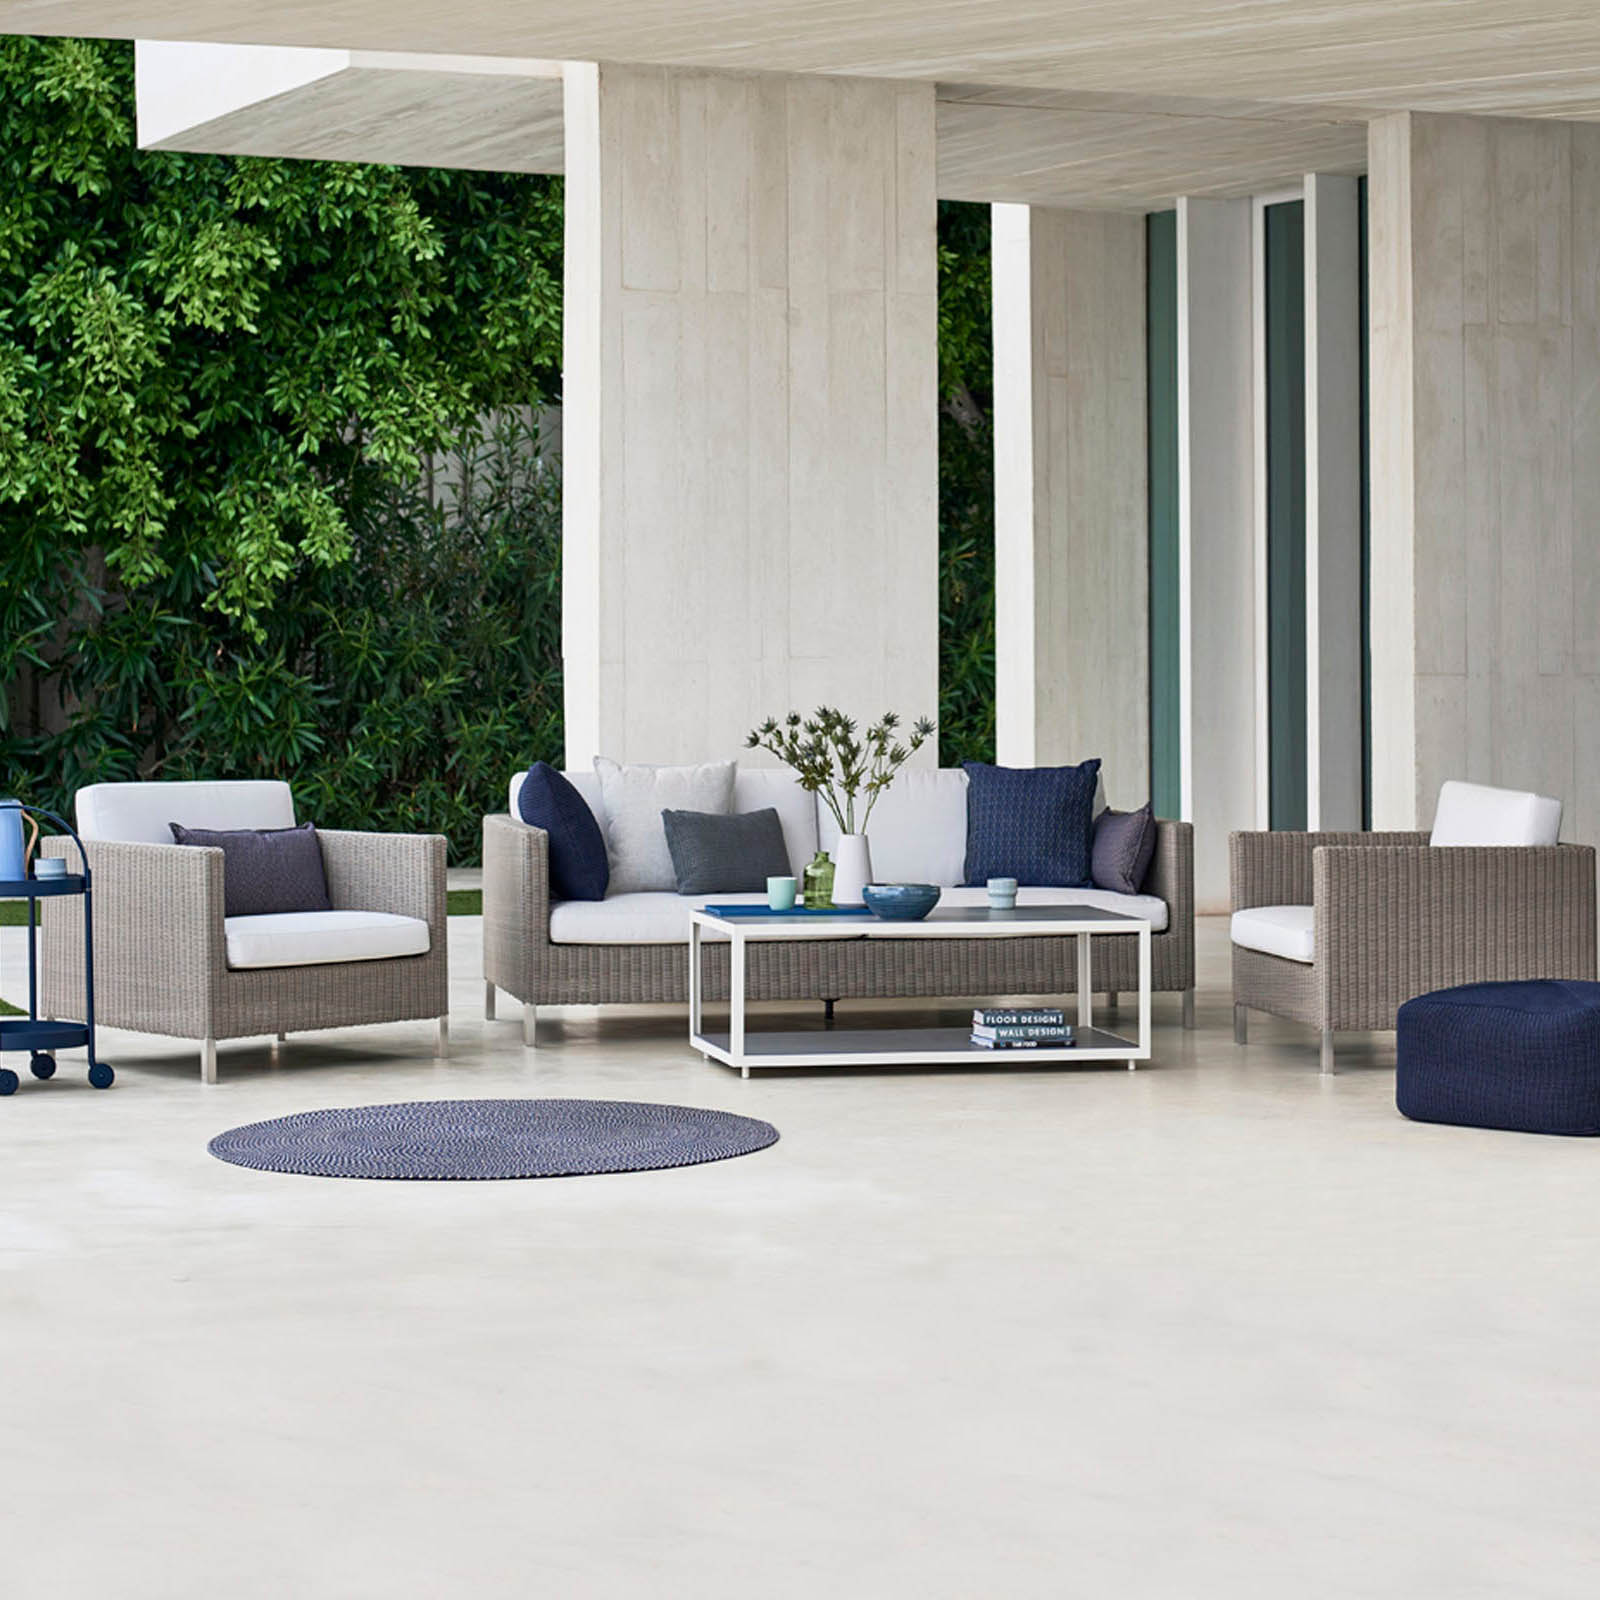 Connect 3-Sitzer Sofa aus Cane-line Weave in Taupe mit Kissen aus Cane-line Natté in Grey